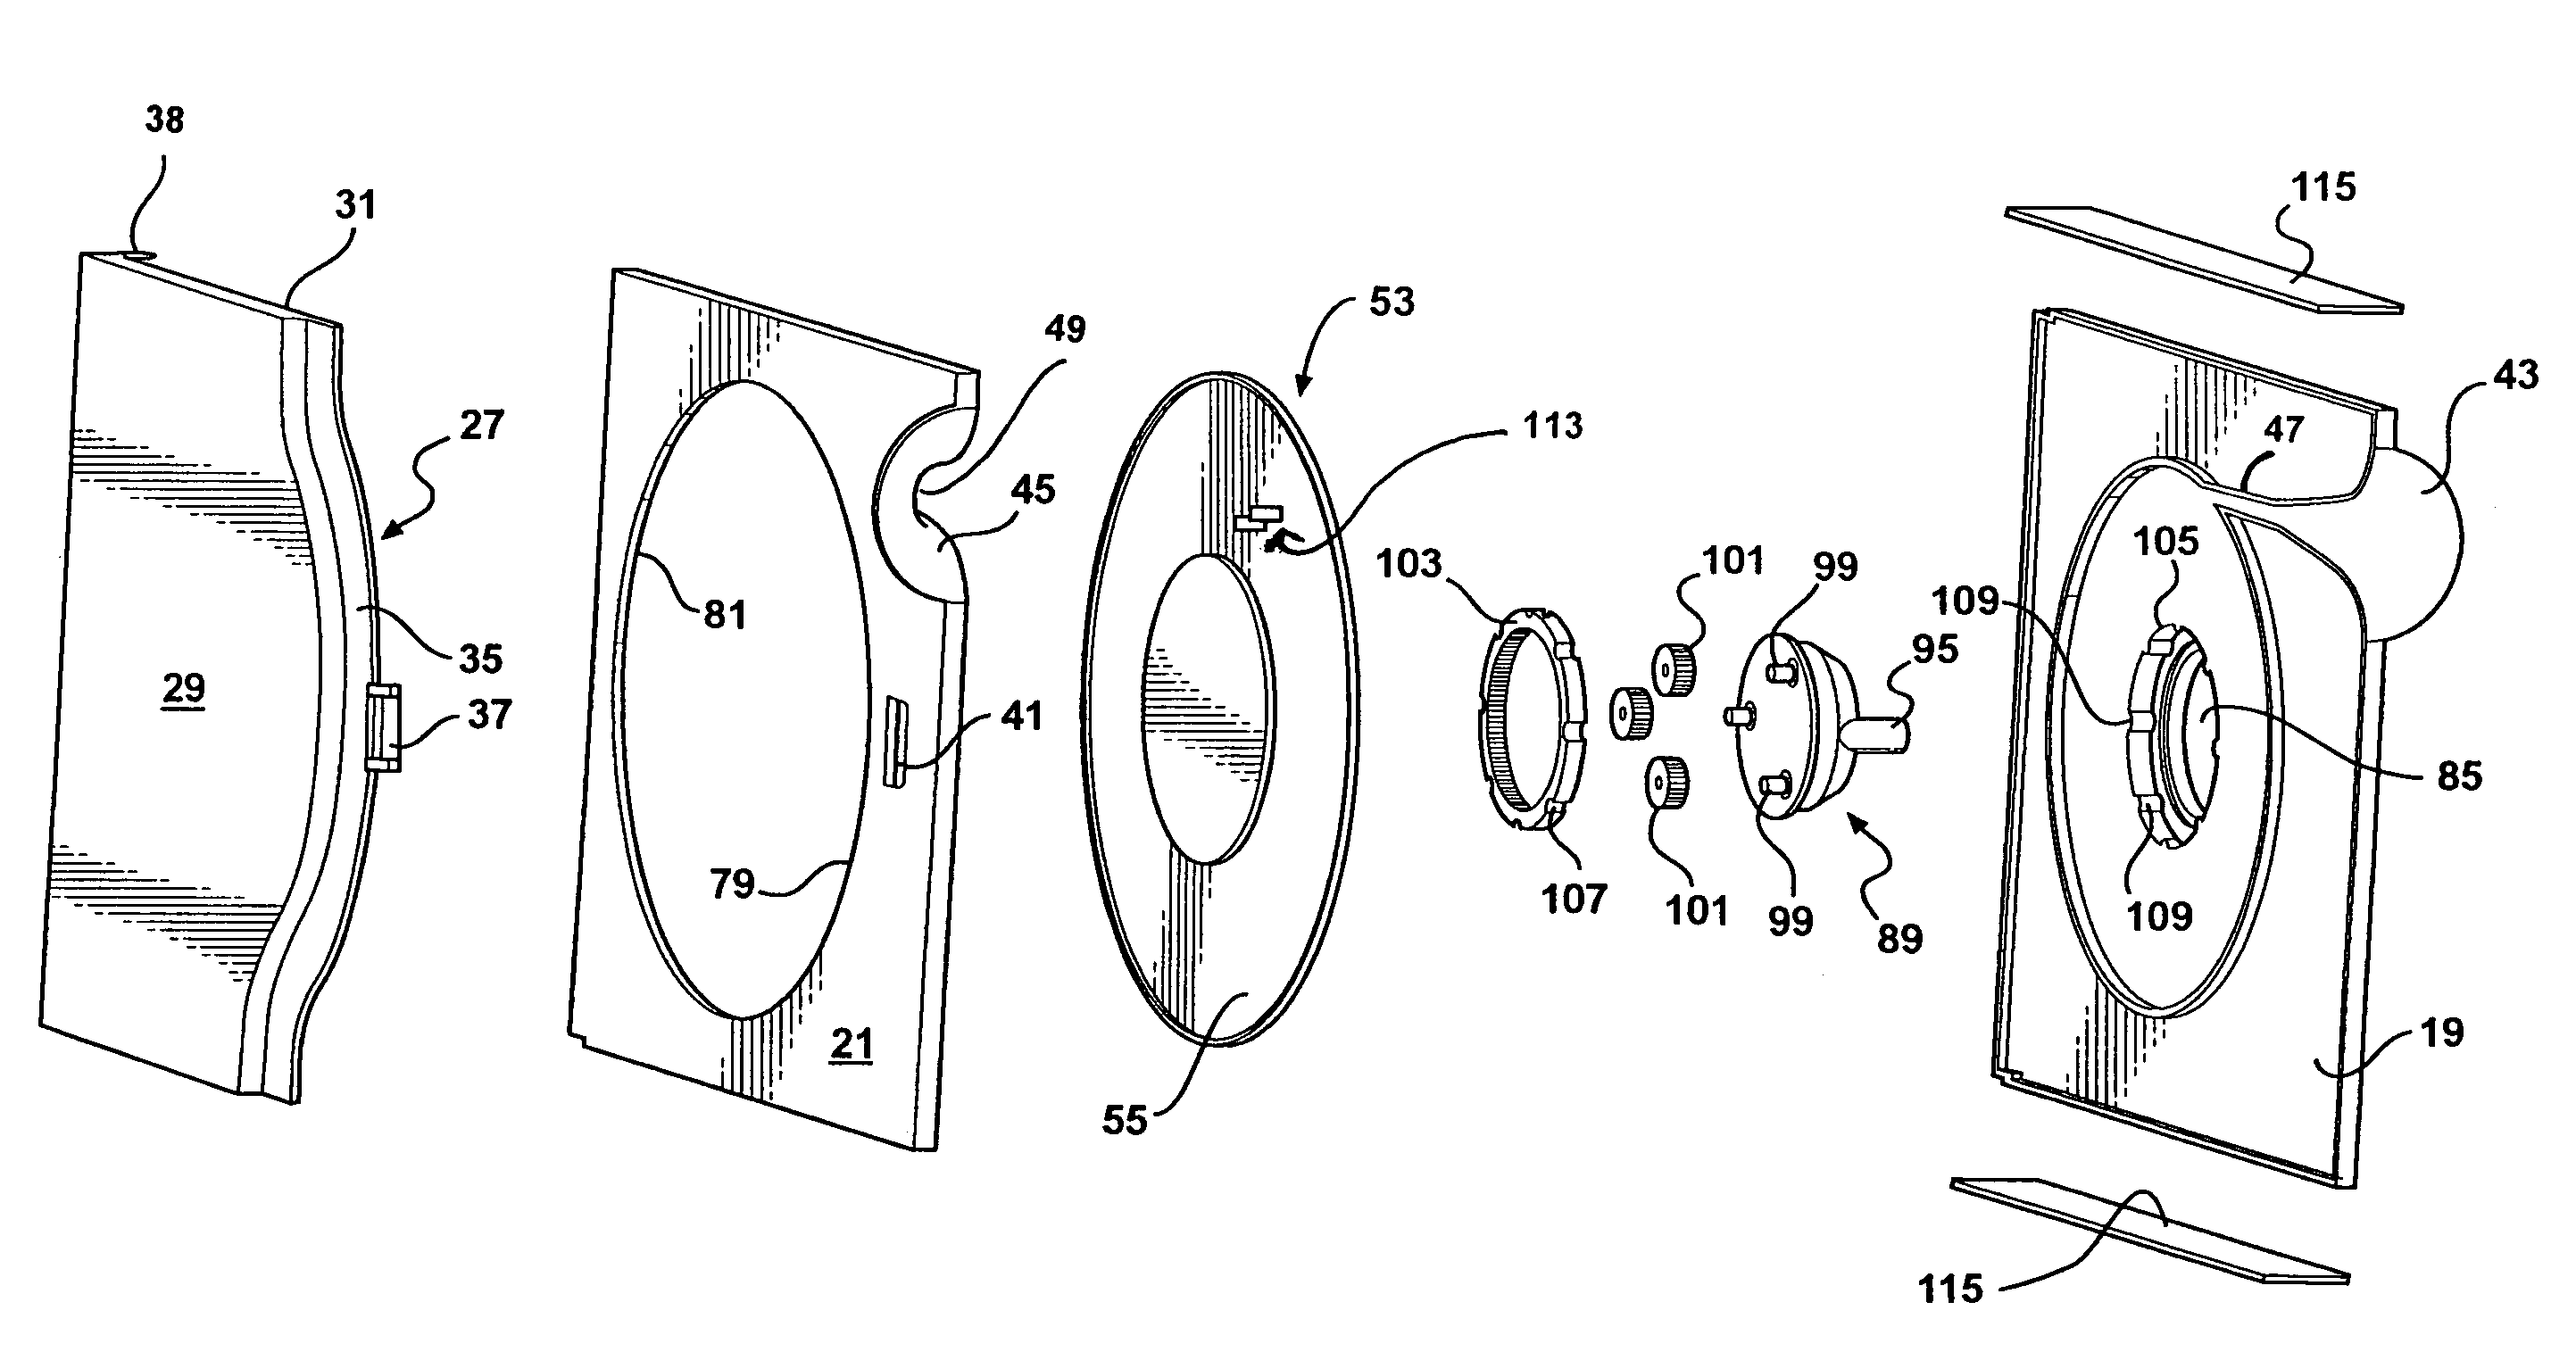 Fiber optic storing and dispensing apparatus